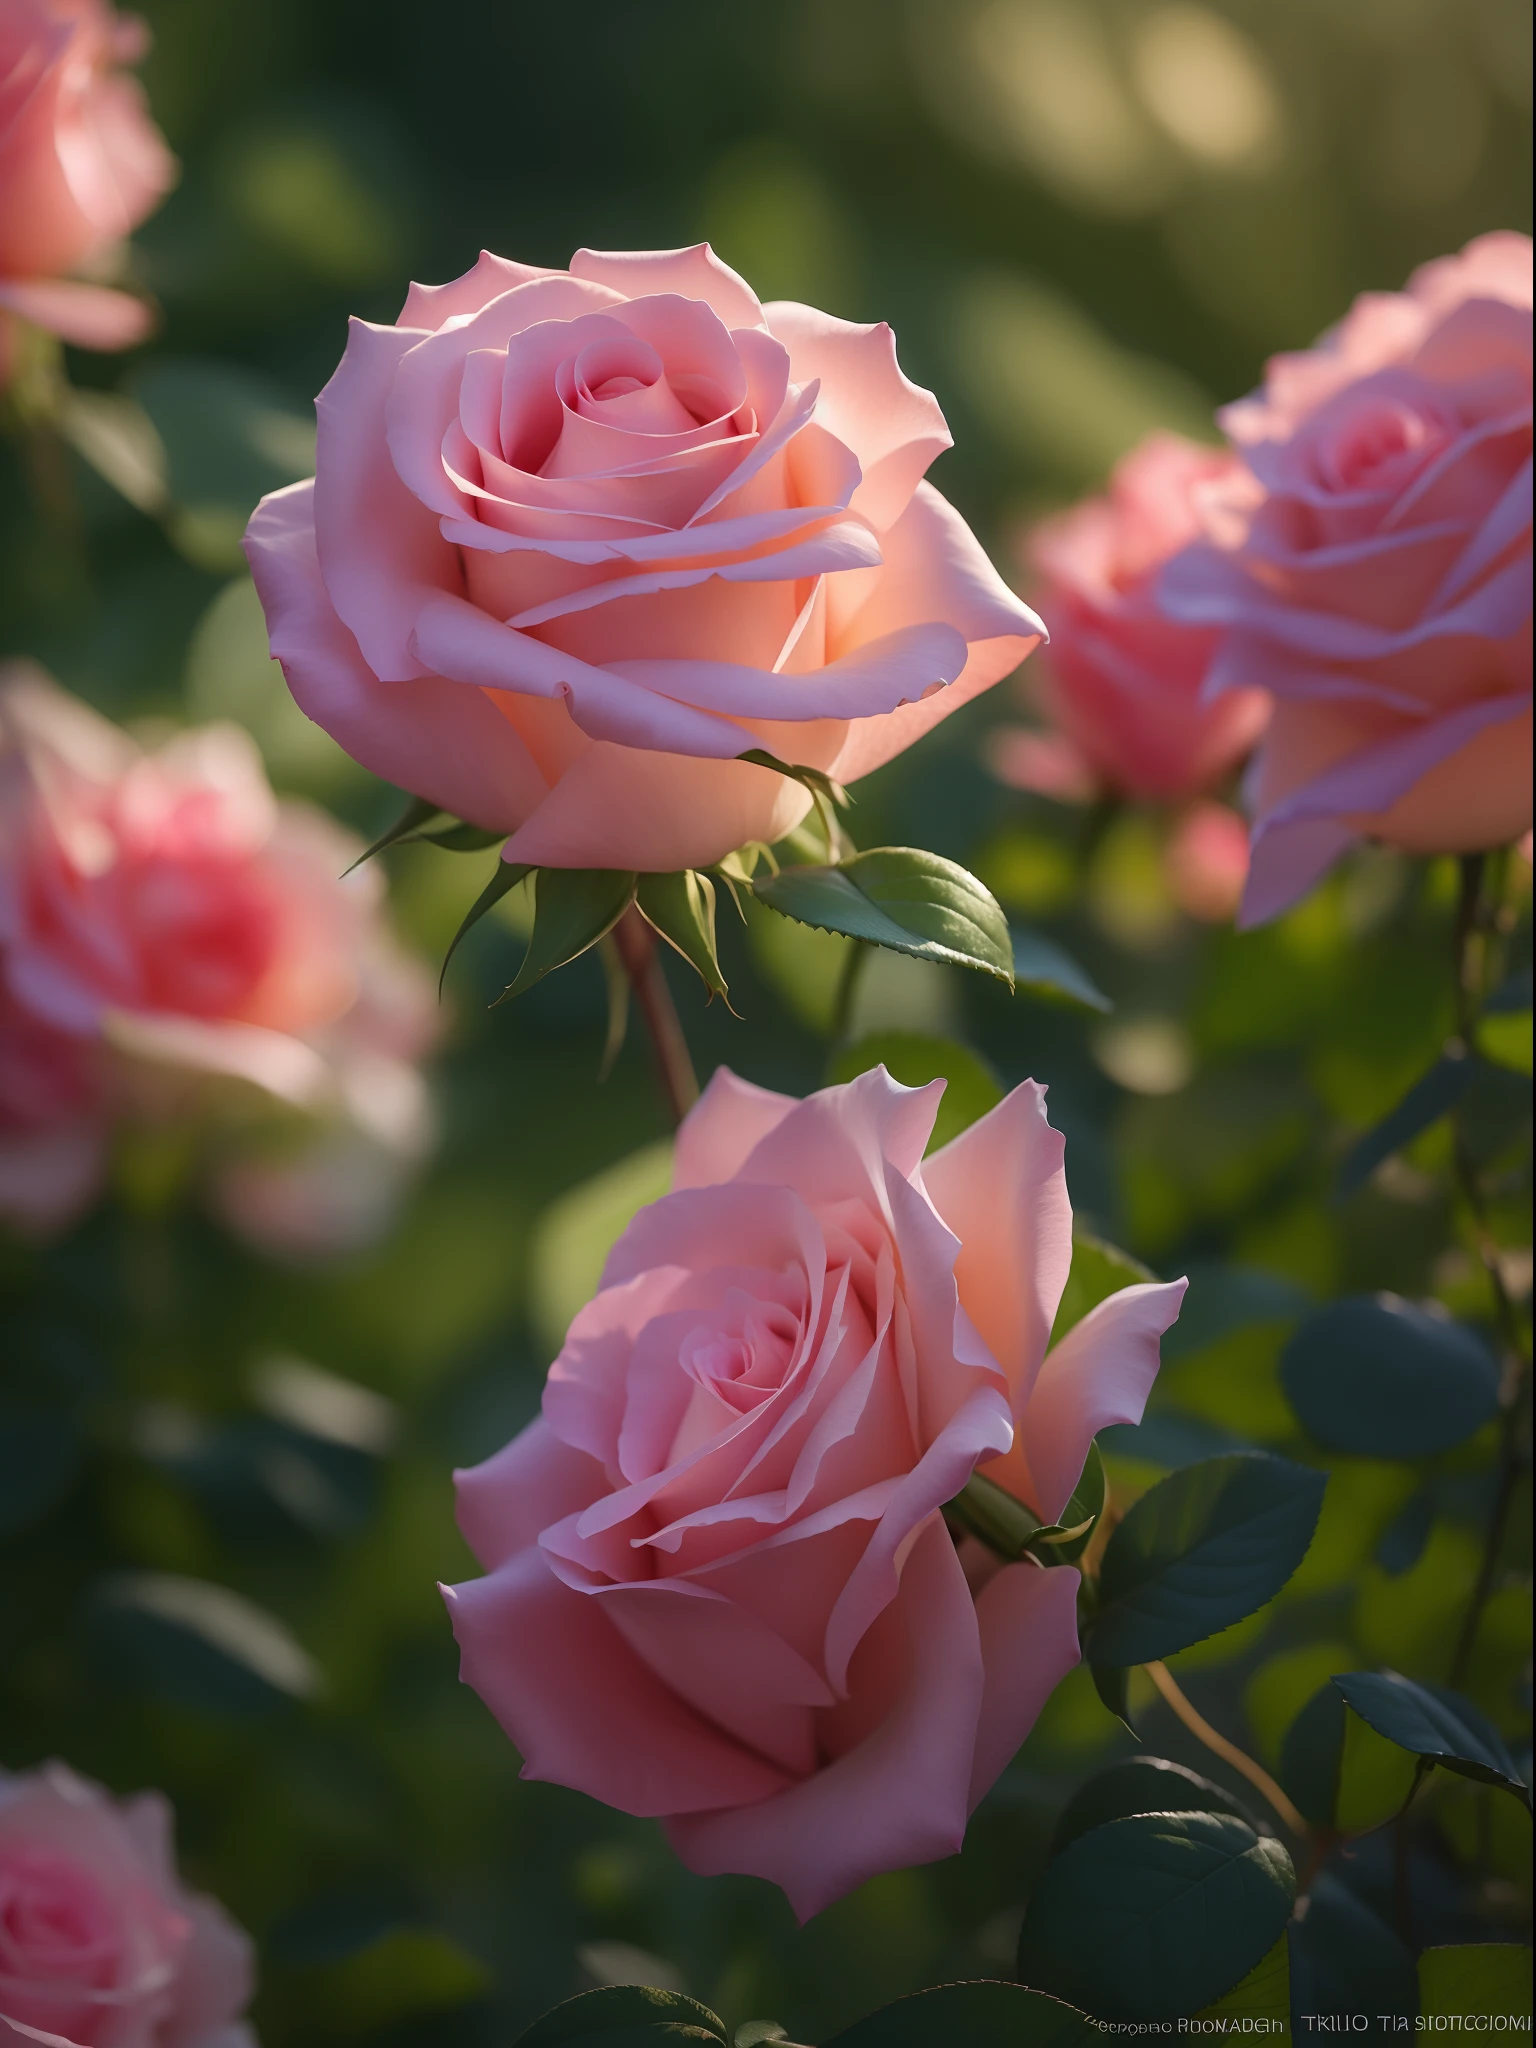 ピンクのバラは庭の茂みに生えています, ピンクのバラ, 映画の光の中のバラ, ピンクローザ, ローズ・トワイニング, バラの写真, アンナ・ニコノバ, 淡いピンク色, キヤノン5Dで撮影した写真, ソフトライト4Kピンク, ペンタックスK1000で撮影, とっても美しい, メランコニックなバラの柔らかな光